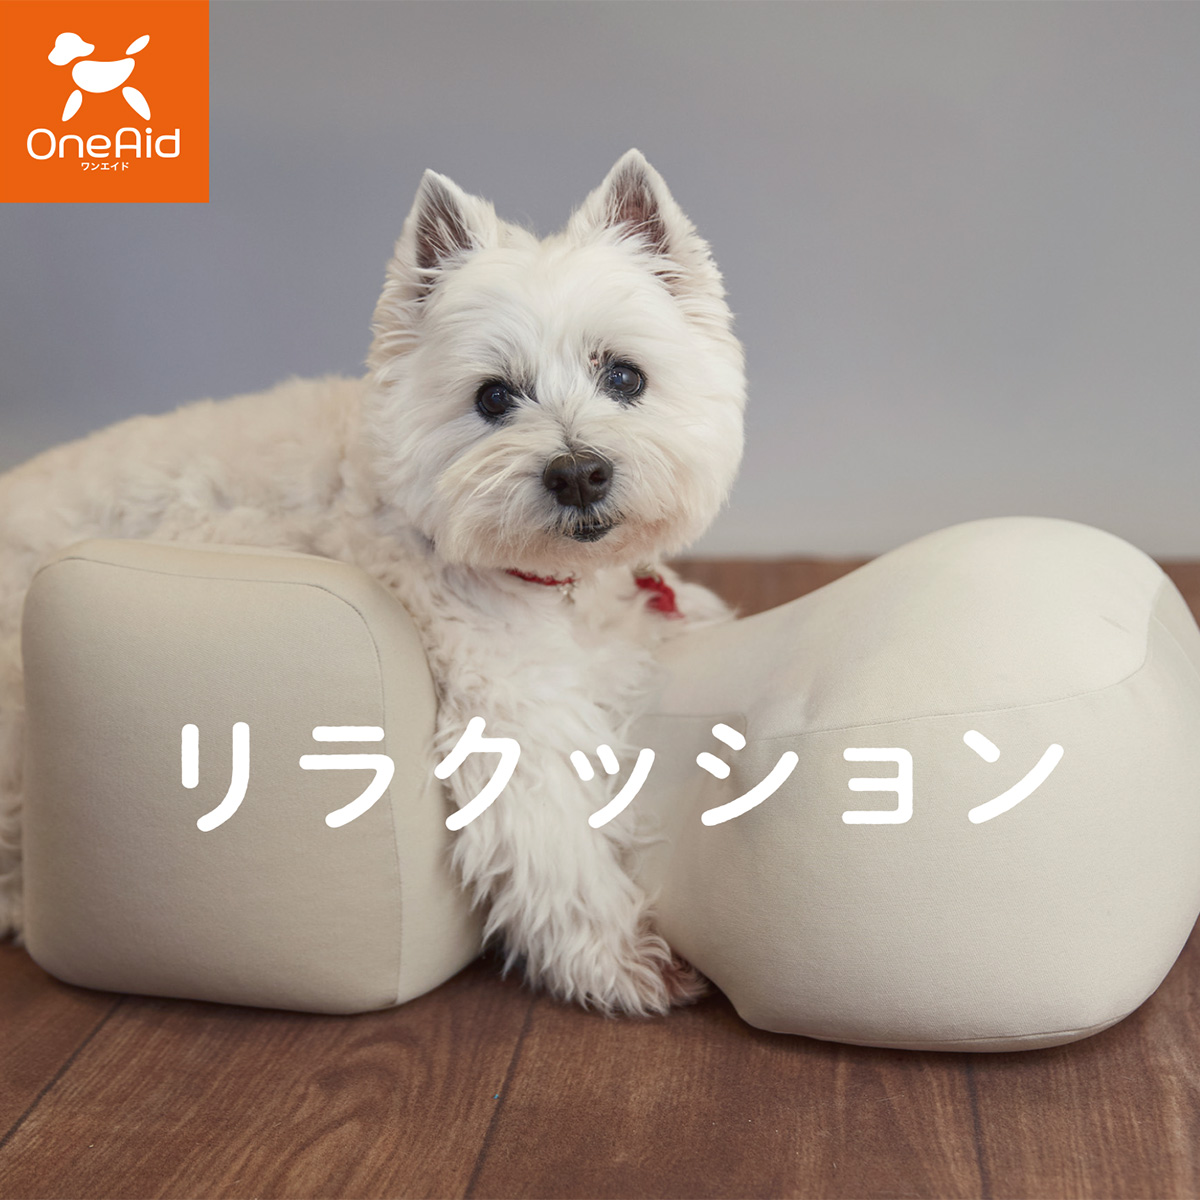 ☆日本の職人技☆ OneAid 送料無料 S リラクッション 小型犬用 ヘルス